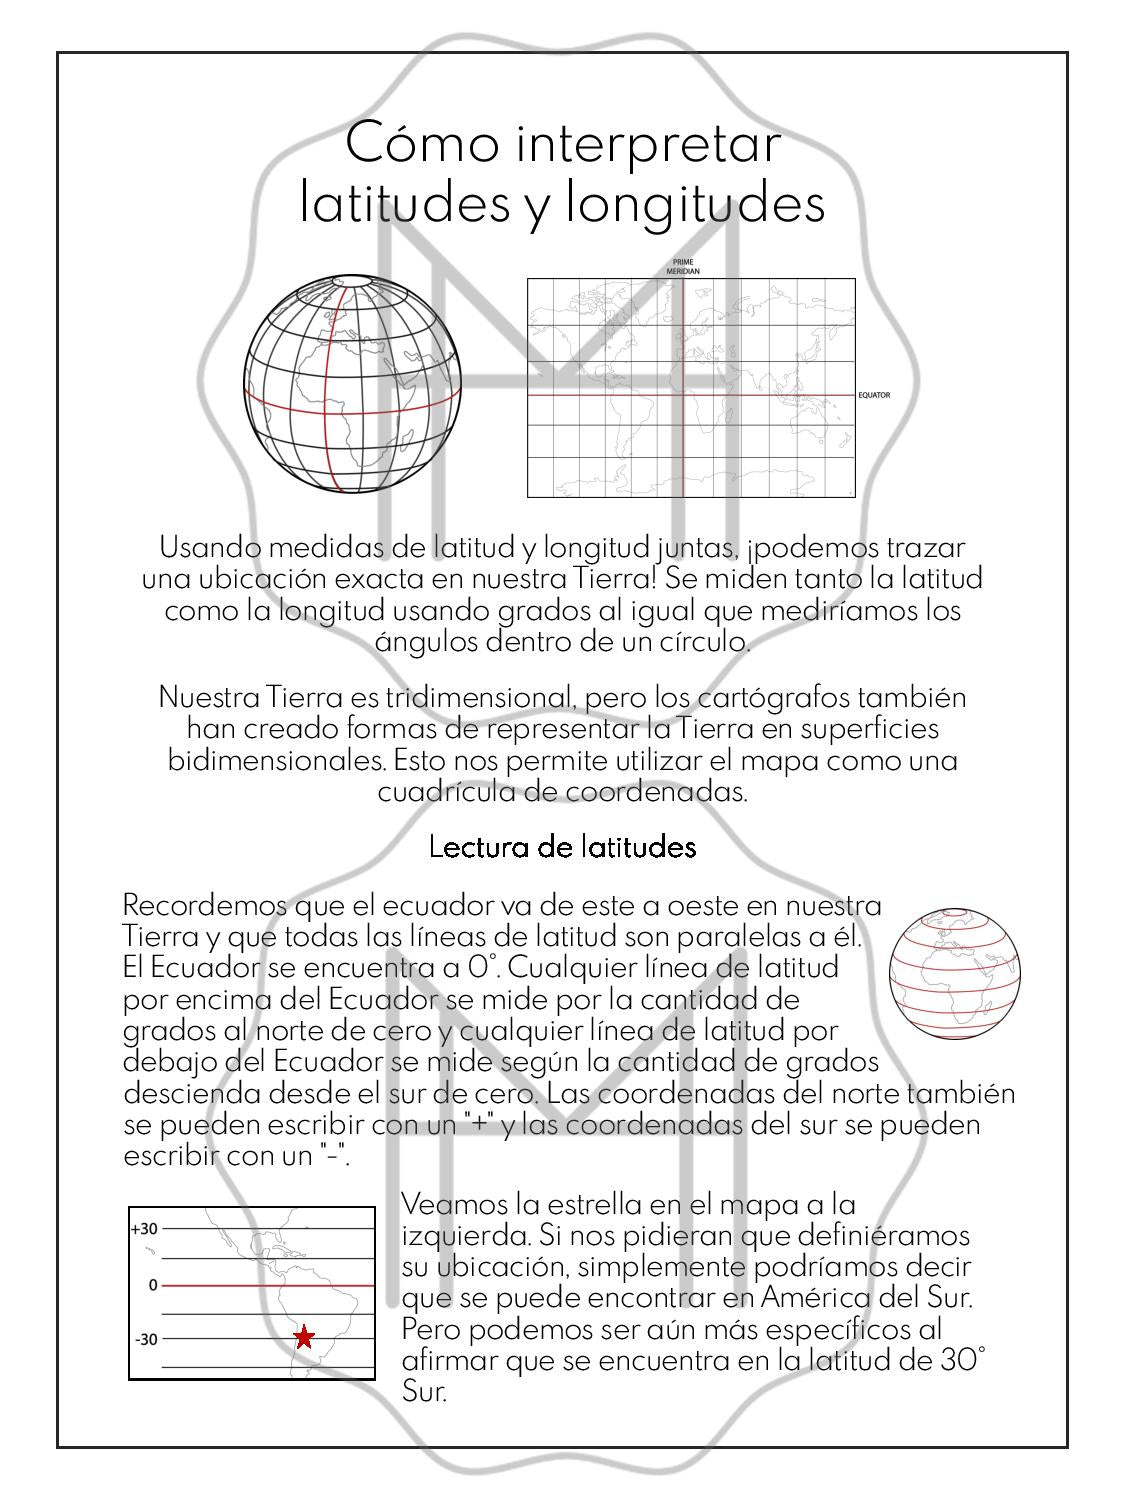 Español - Estudios sobre latitud y longitud